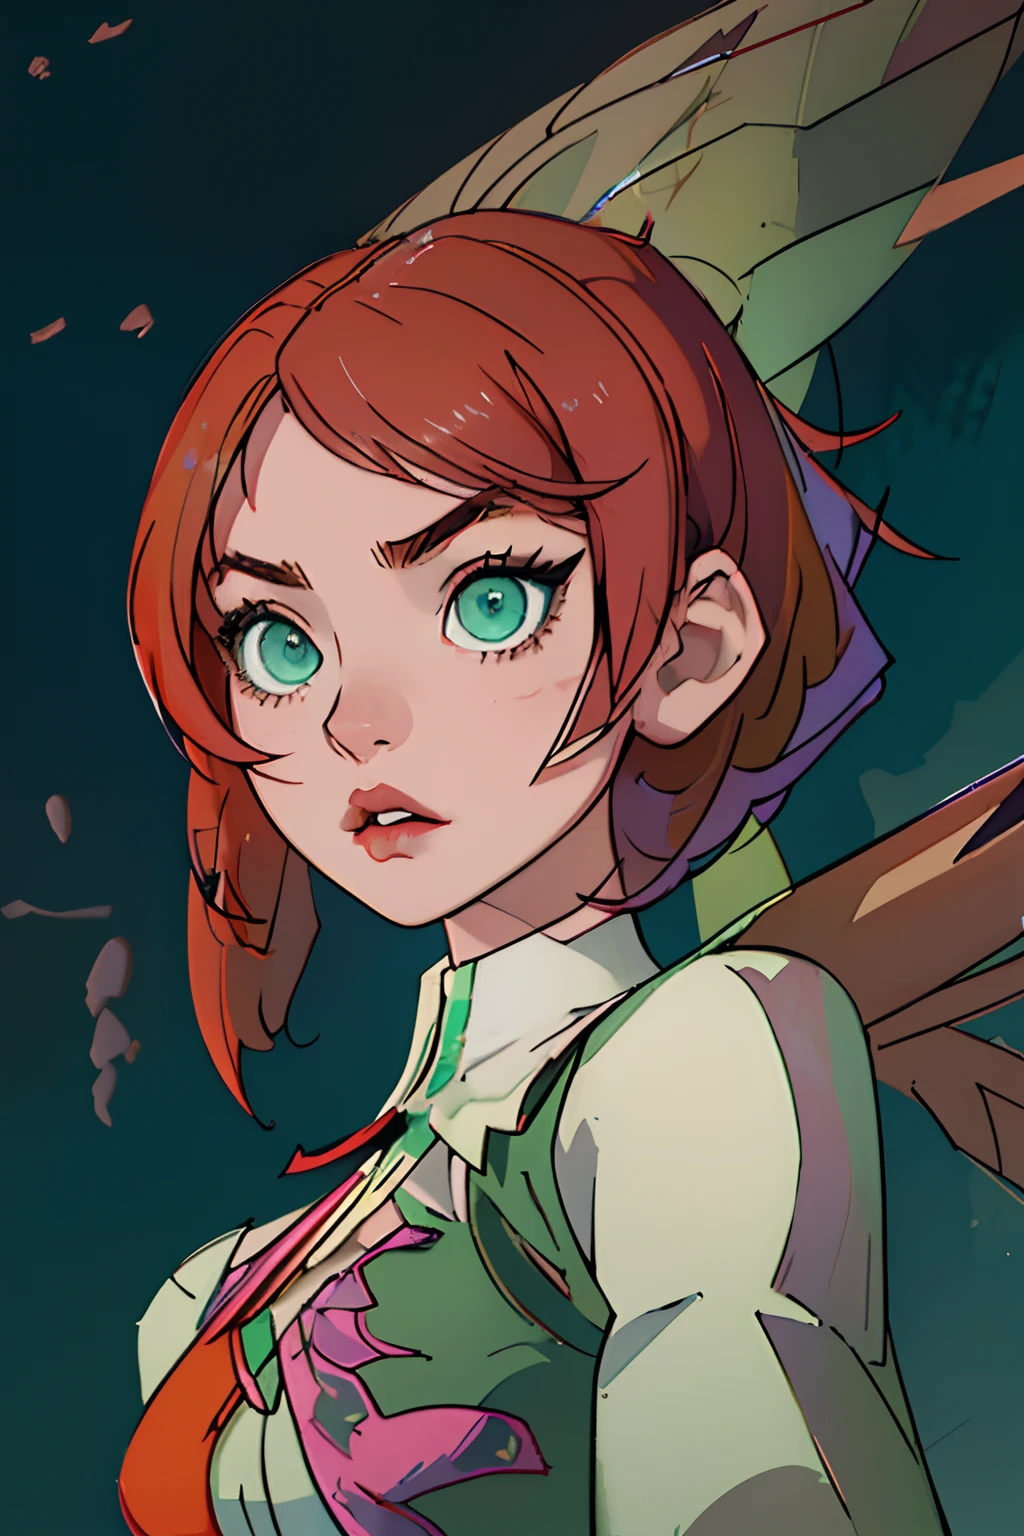 アリサの可愛い顔, 左右対称の完璧な緑の目, マルチカラーのピンクのショートヘア, 機械の翼, 鉄拳